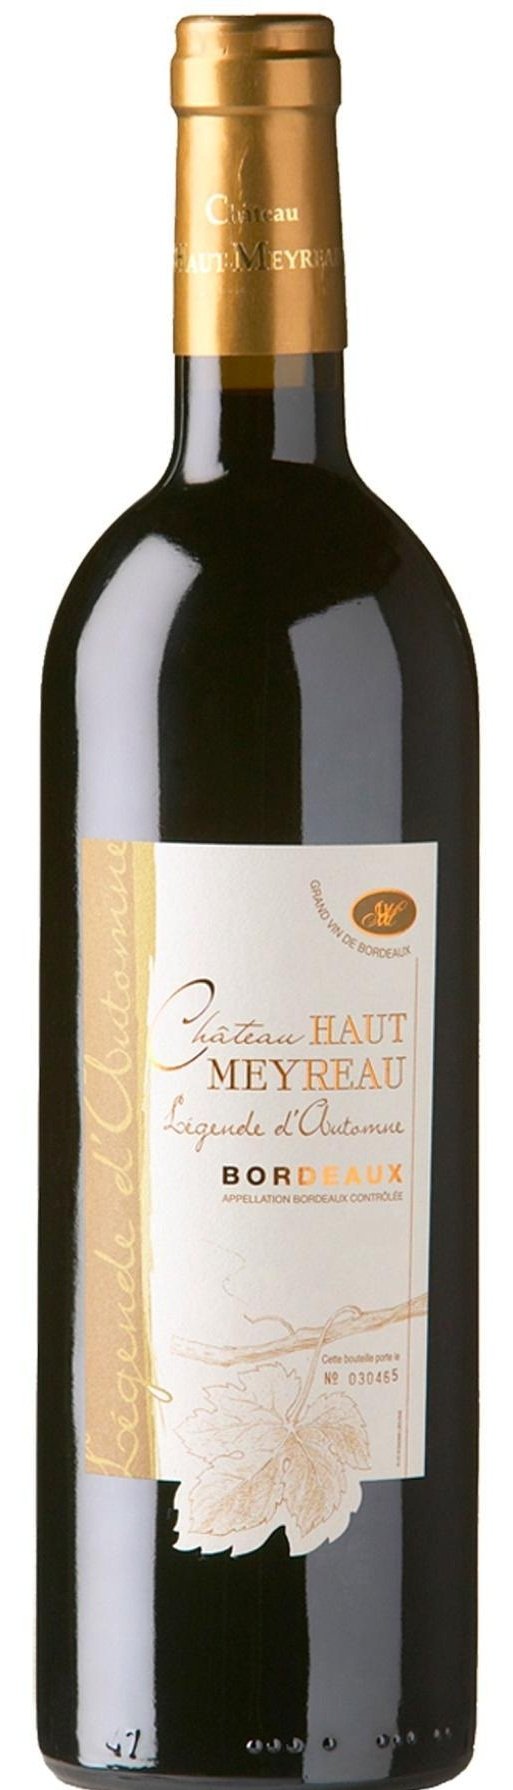 Chateau Haut Meyreau Bordeaux L'Mae du Terroir 2016